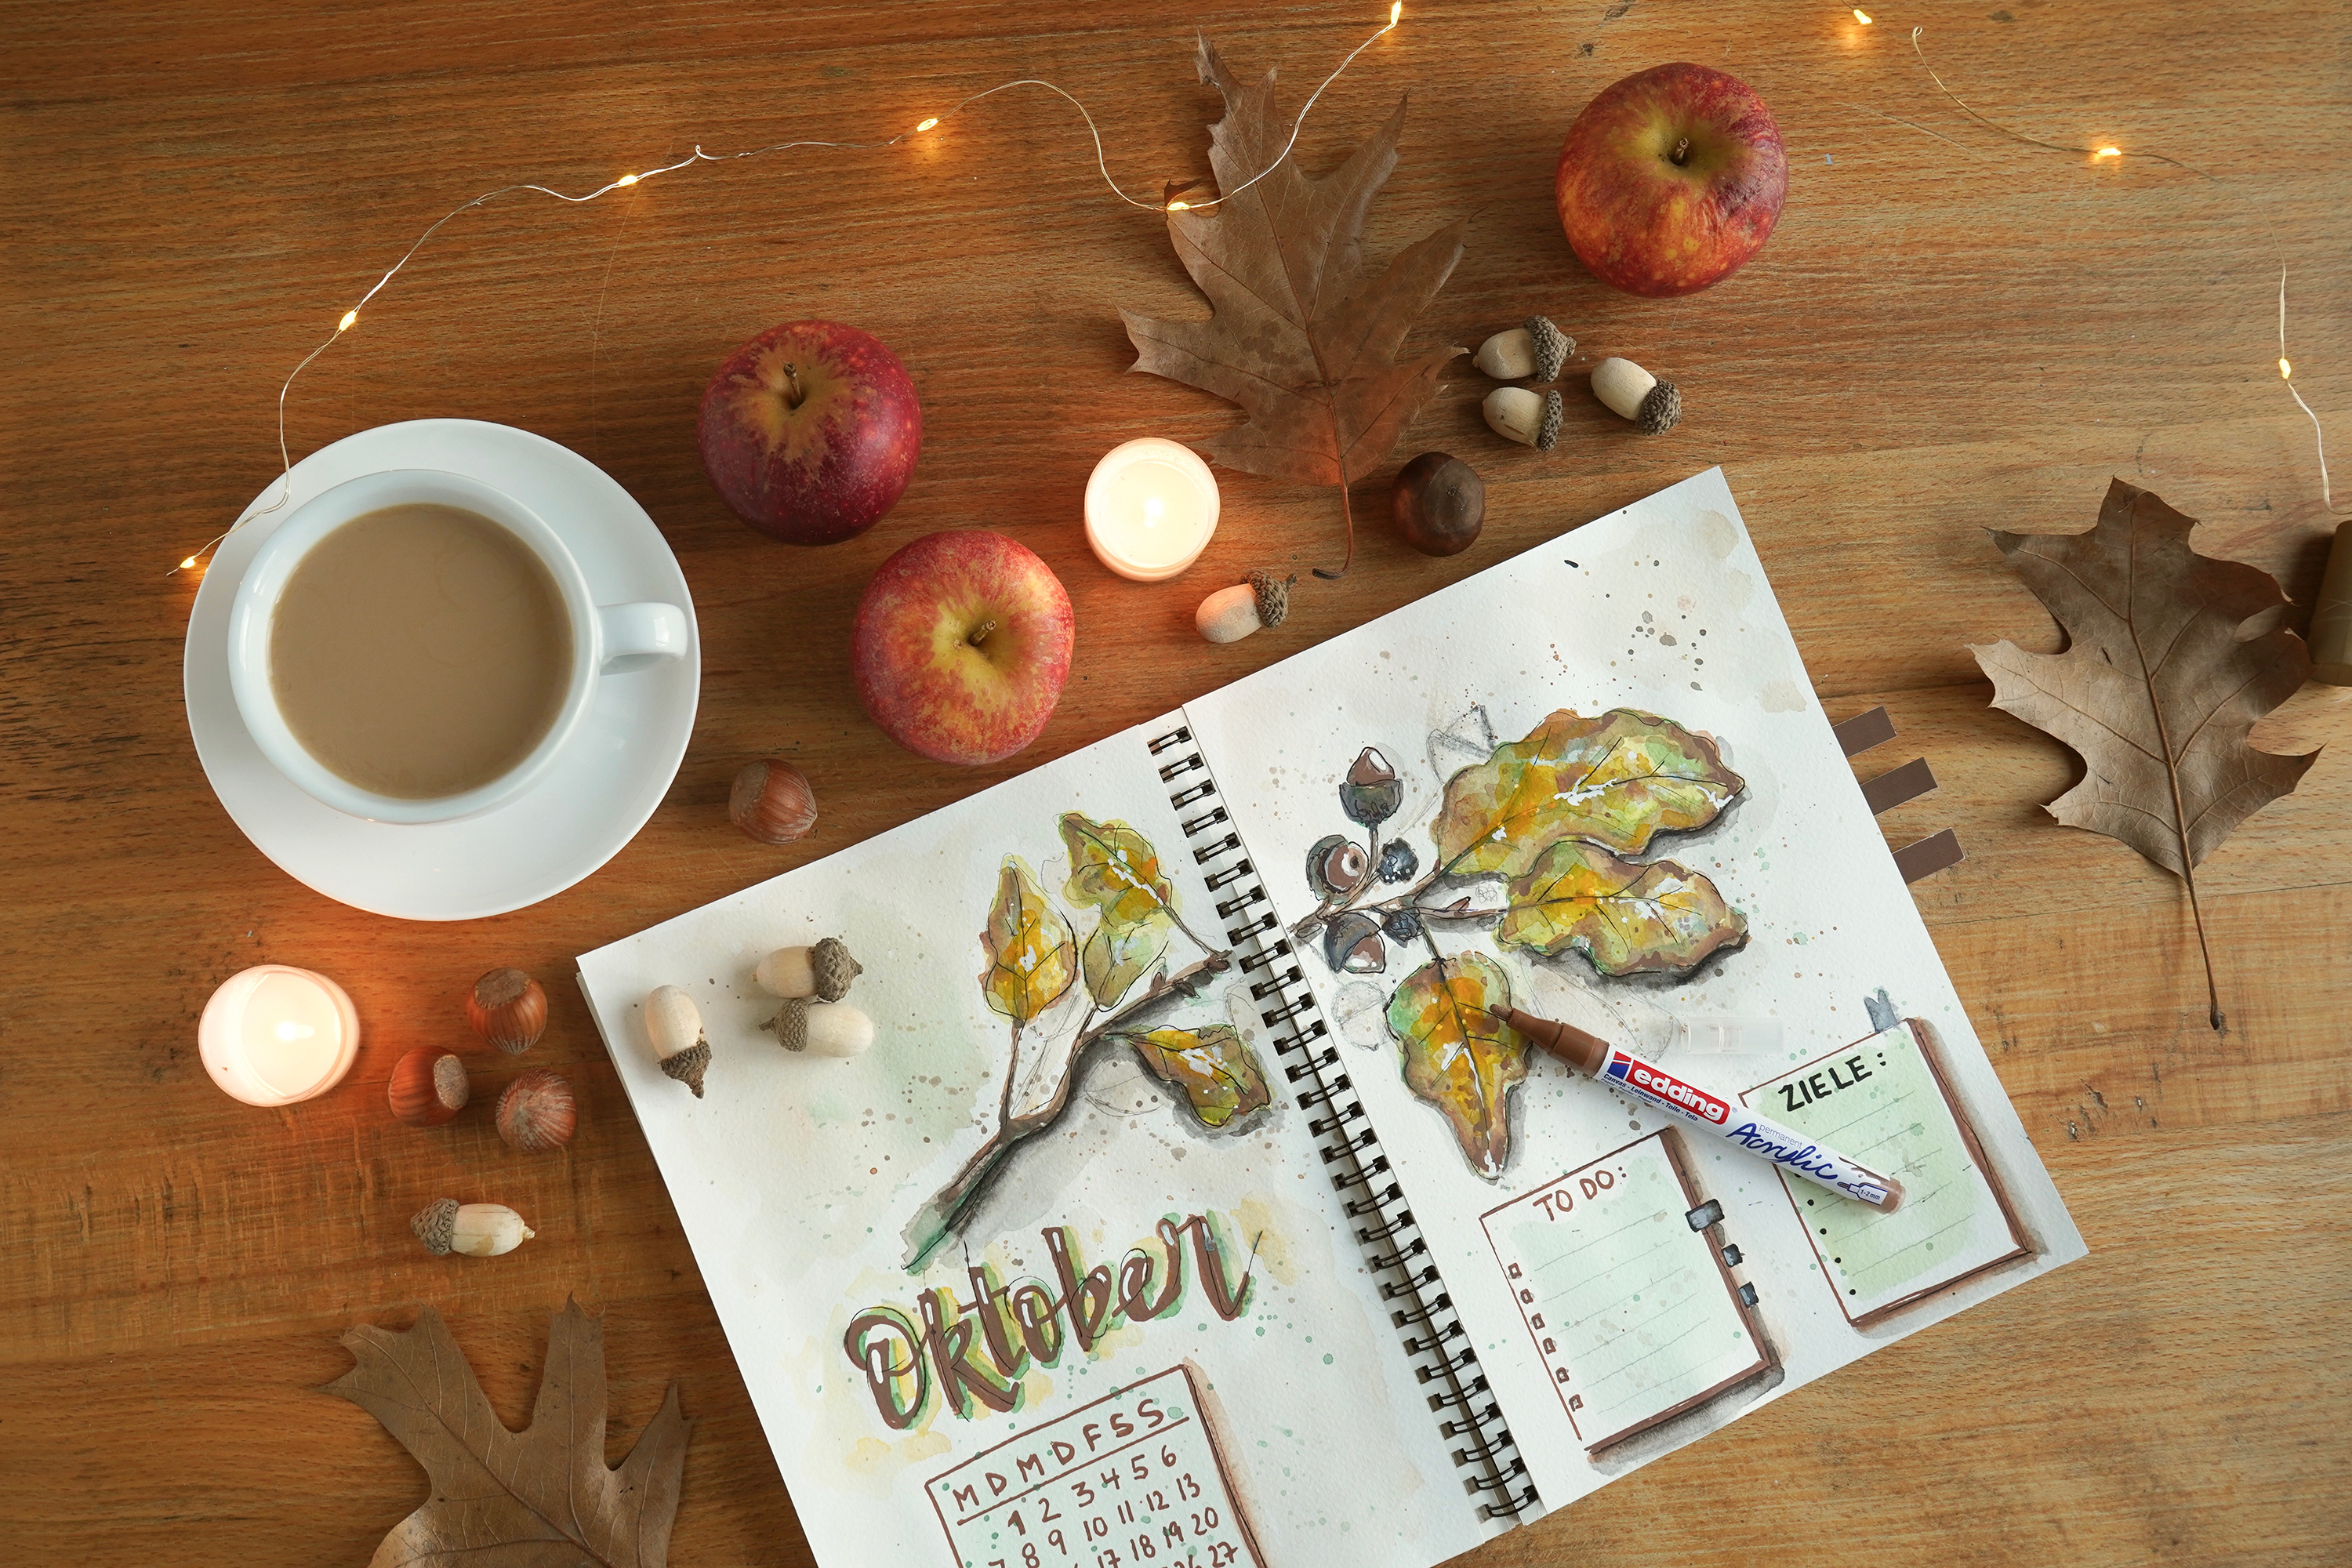 Eine gemütliche Herbstszene mit einem aufgeschlagenen Kunstjournal für ein edding 5300 Acrylmarker fein 5er-Set-Gemälde zum Thema Oktober, umgeben von kleinen Kerzen, frisch gepflückten Äpfeln, Eicheln und trockenen Blättern auf einem Holztisch.